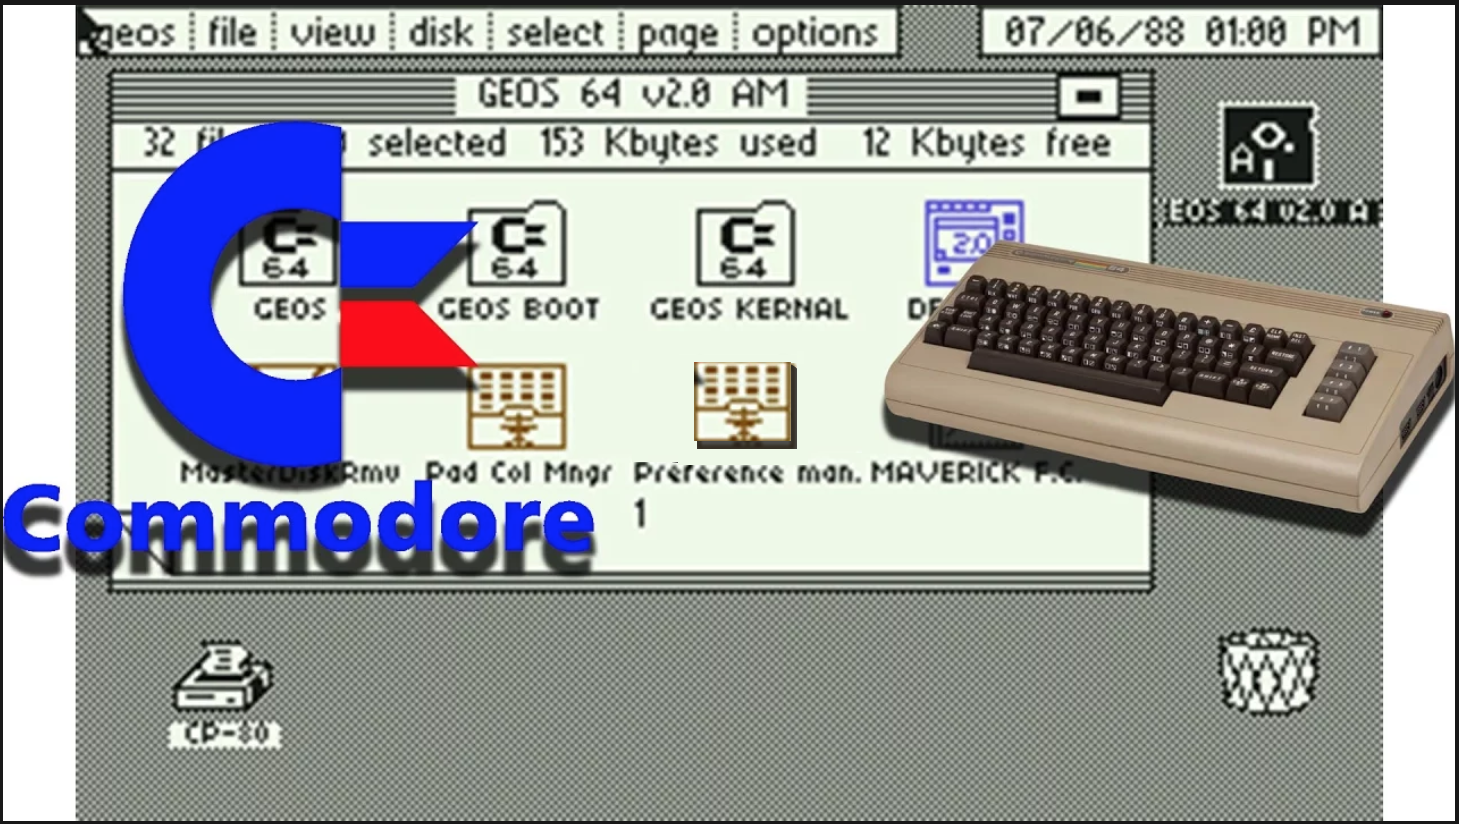 16 GB Microsd Card Deluxe Commodore 64 GEOS Hard Drive for Raspberry Pi 4-400